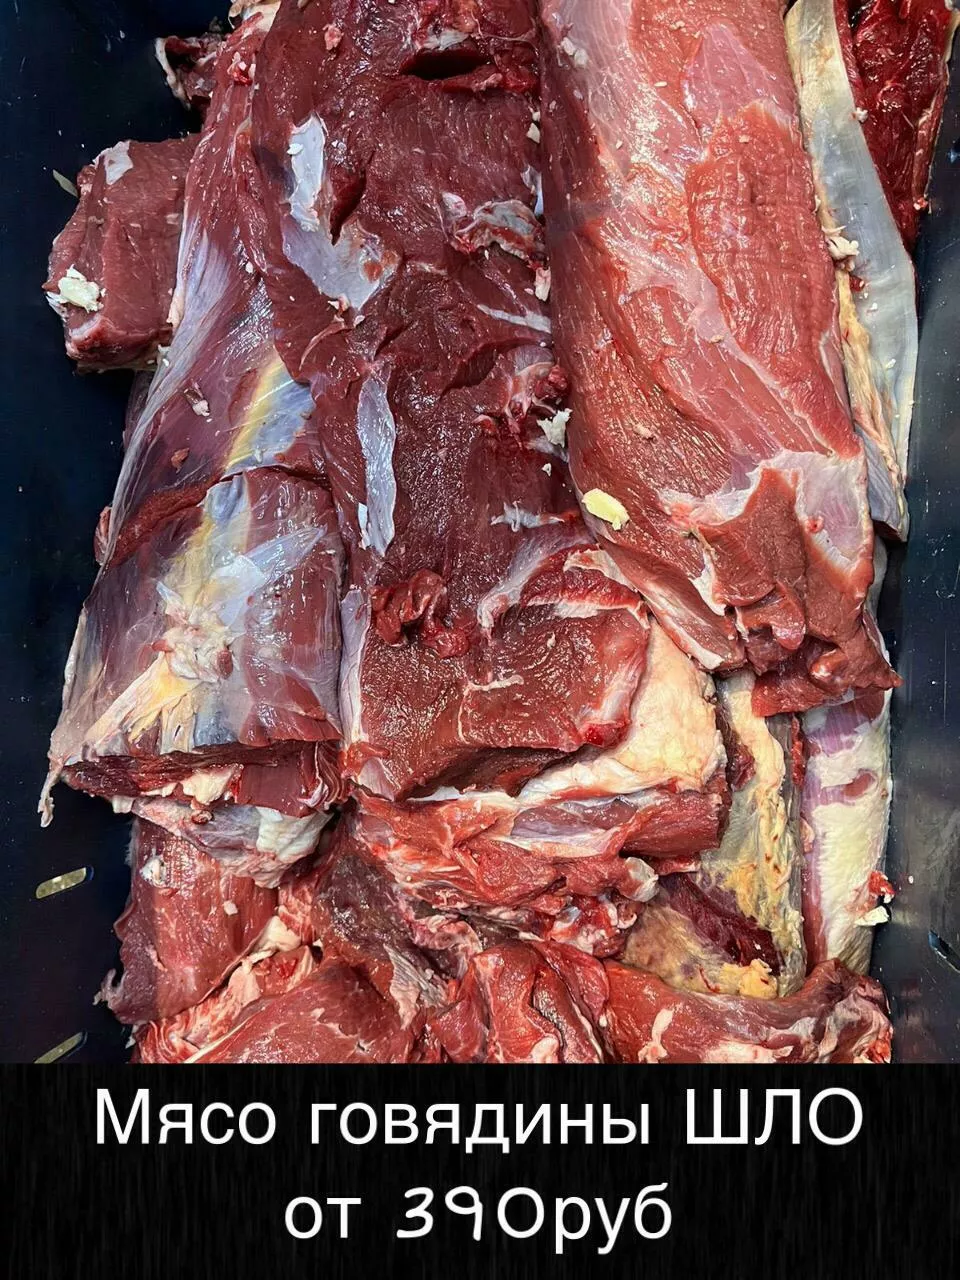 мясо говядина доставим до вашего региона в Улане-Удэ